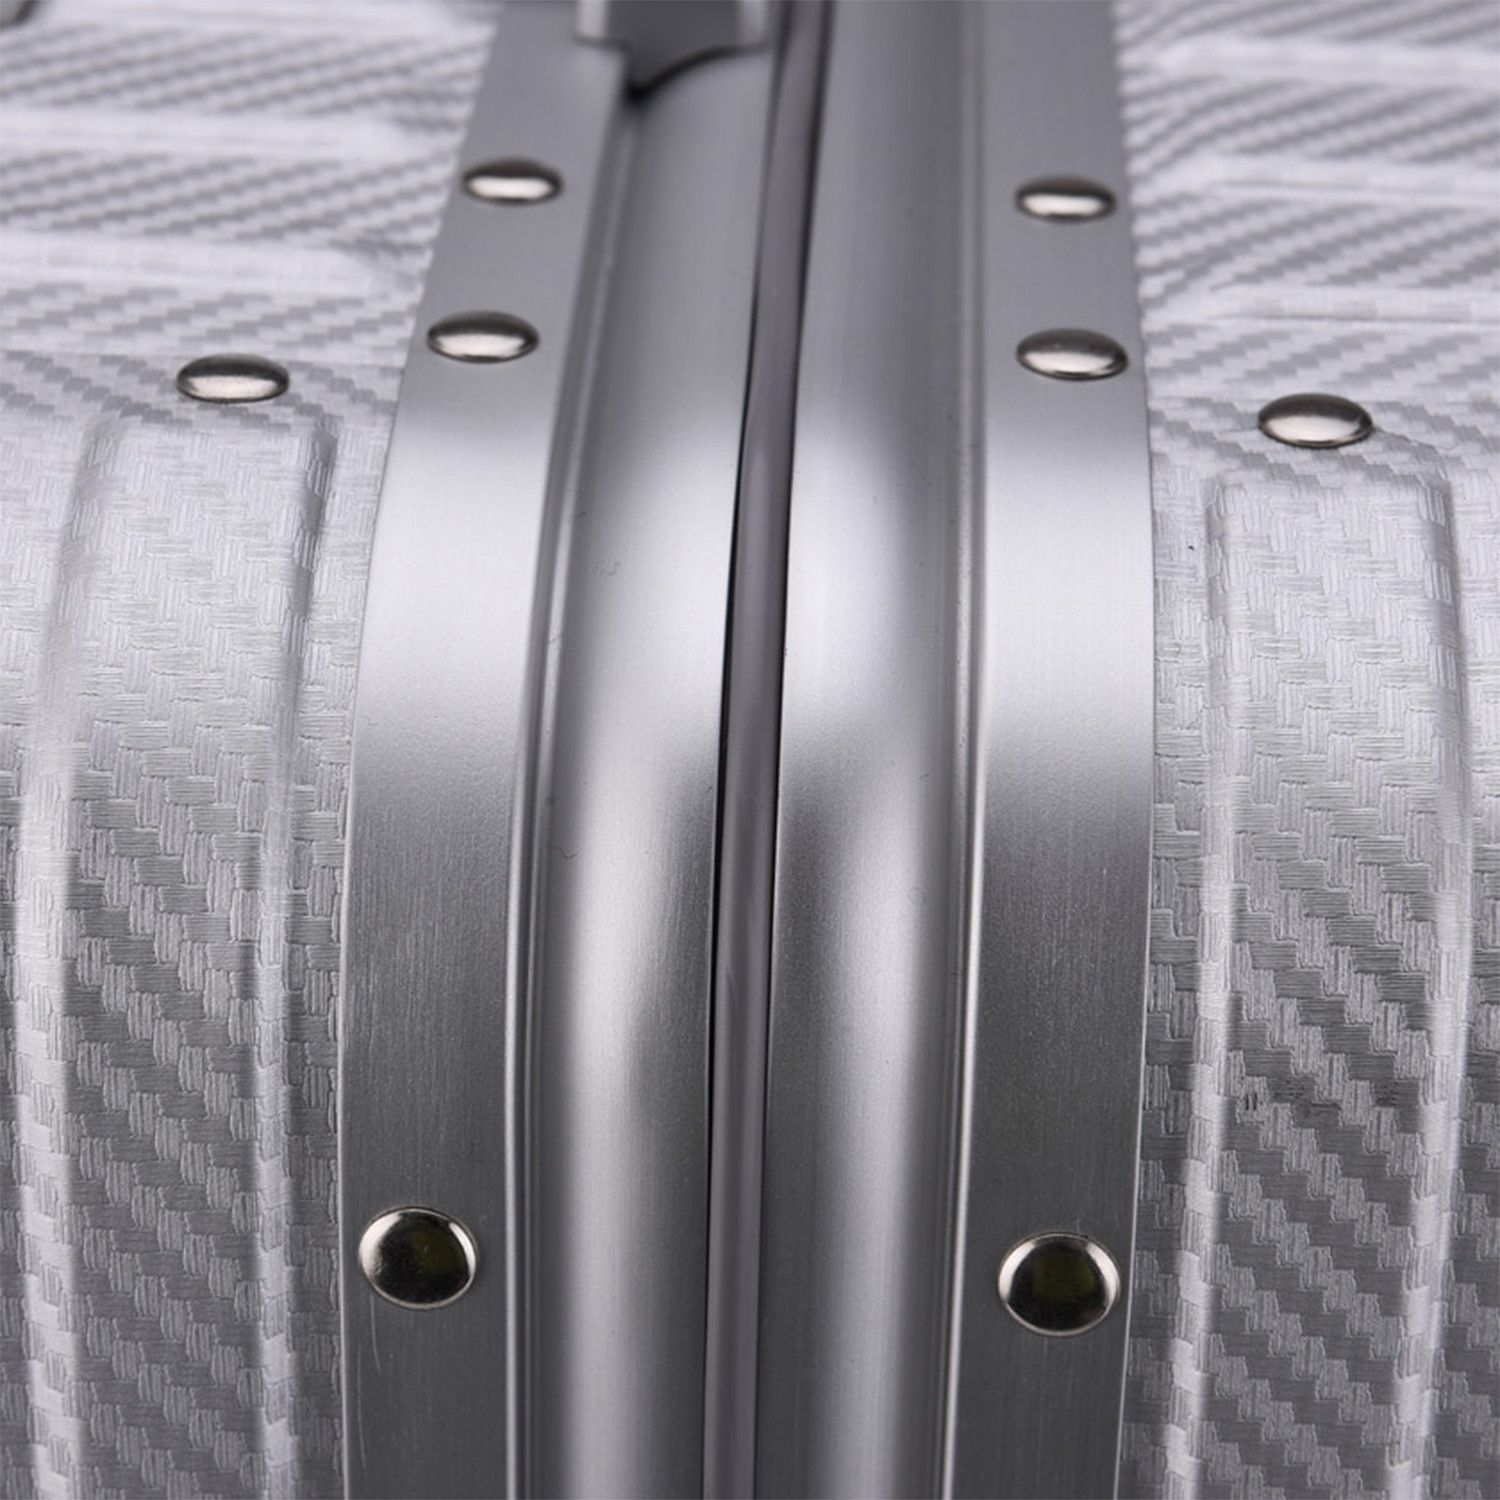 TREK Aluminum Suitcase Silver